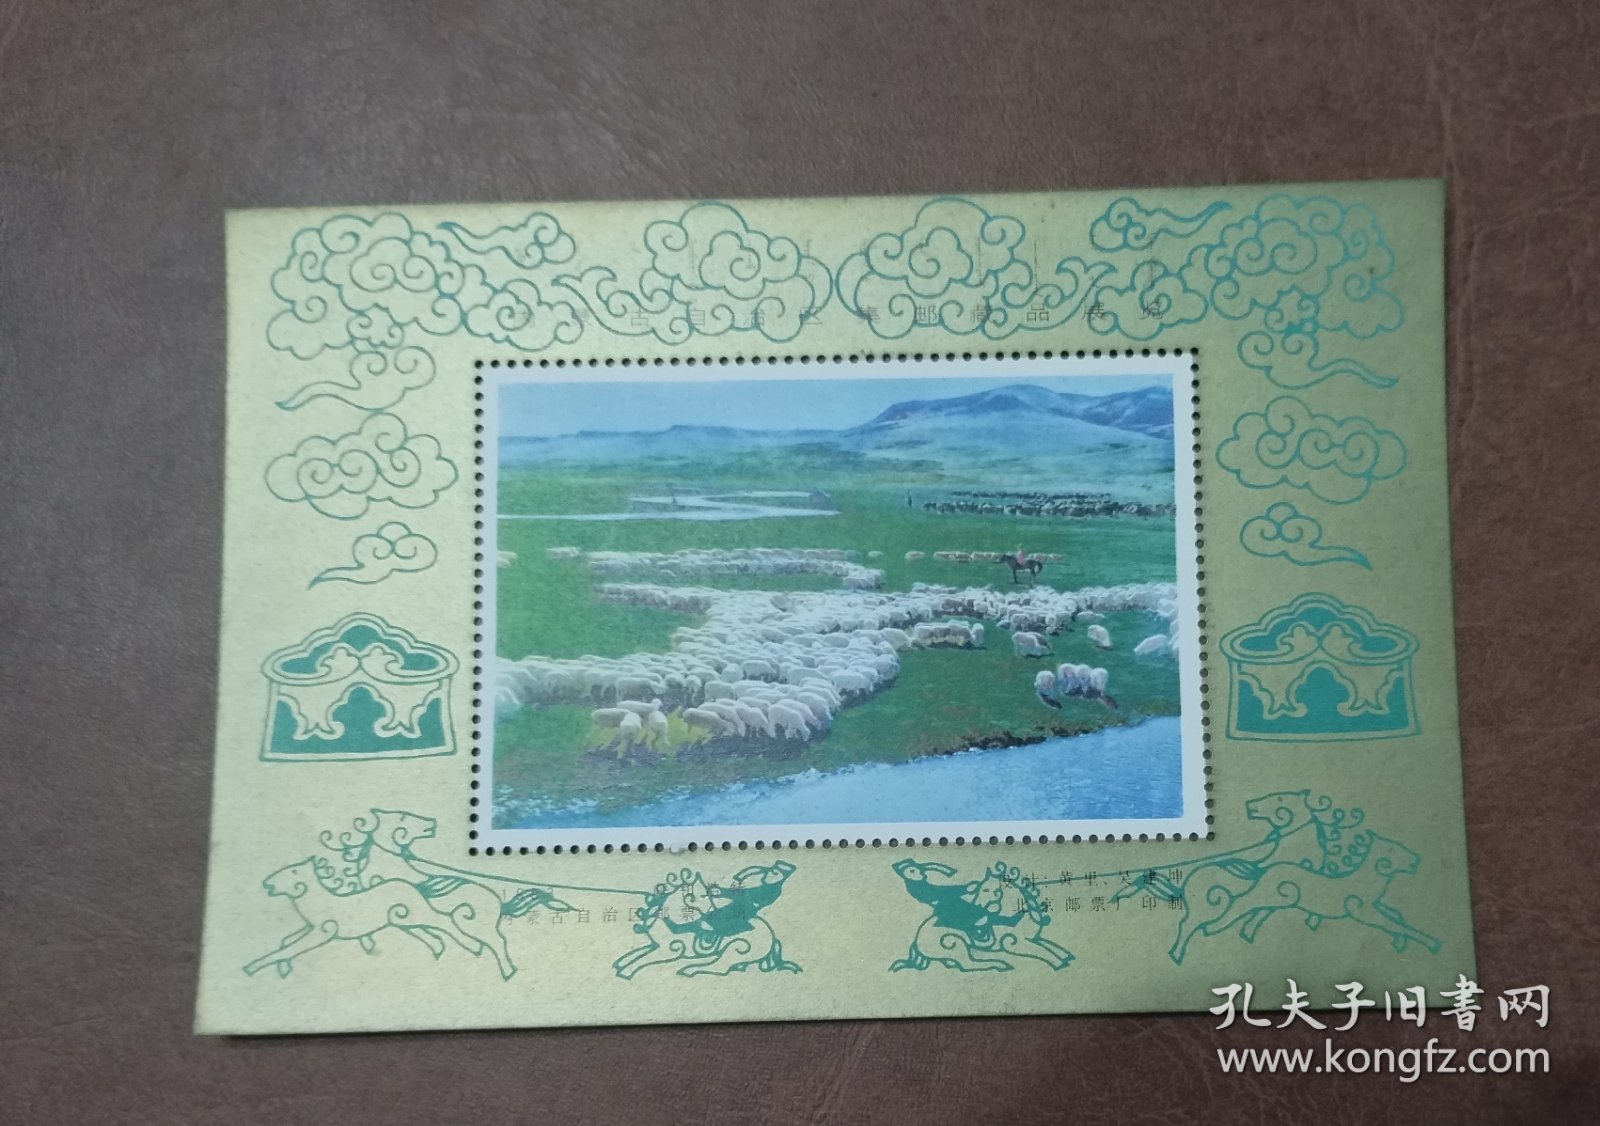 《内蒙古集邮藏品展览》纪念张